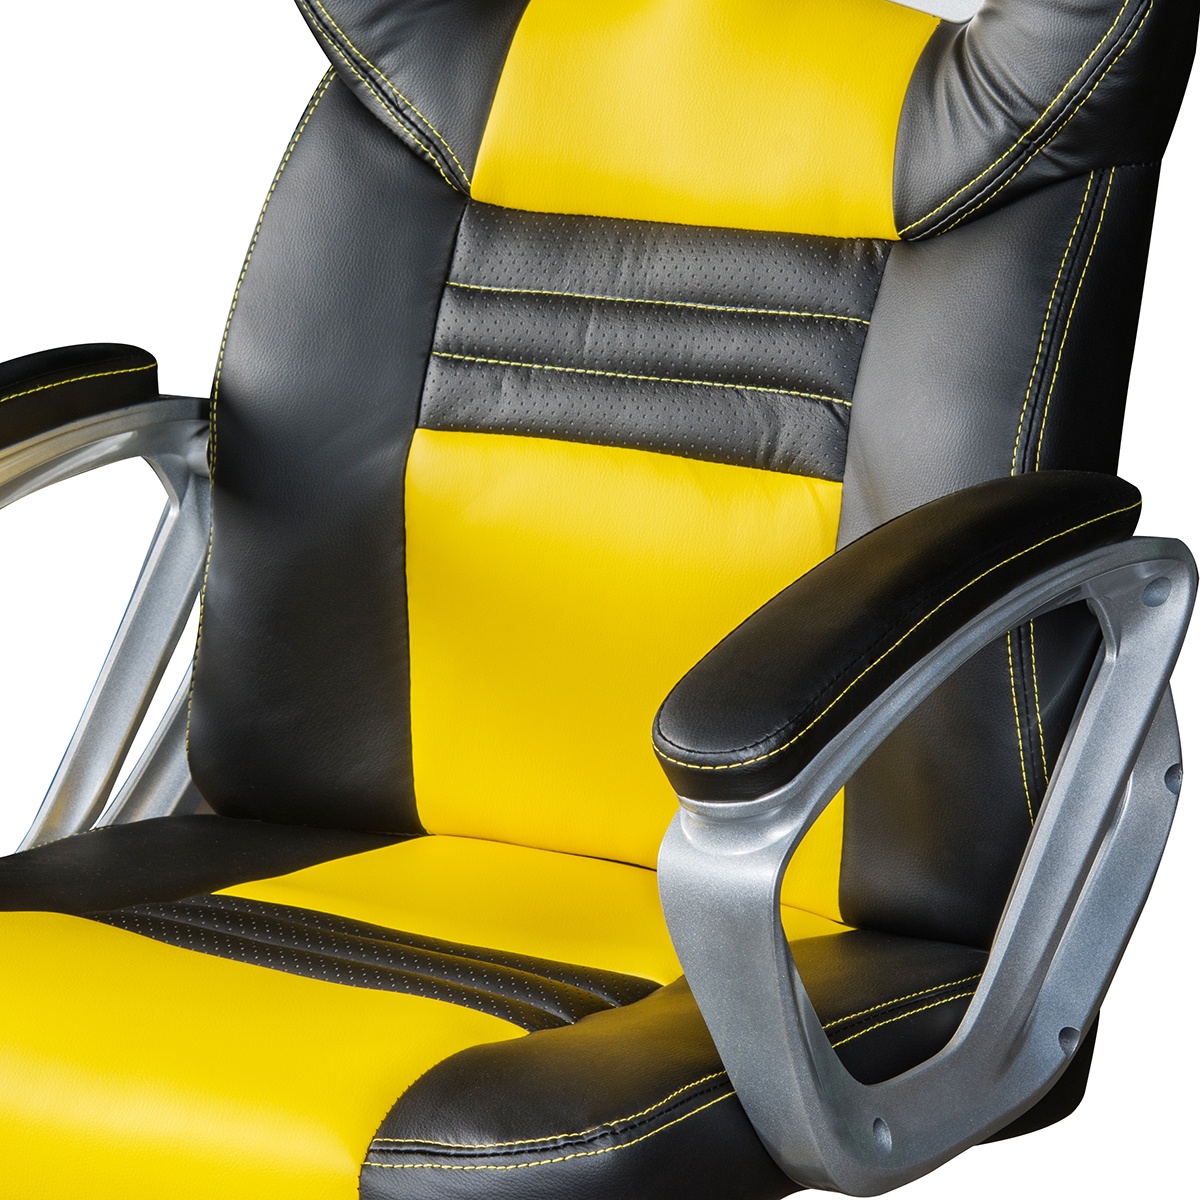 фото Компьютерное кресло SOKOLTEC ZK1302OR, желтый